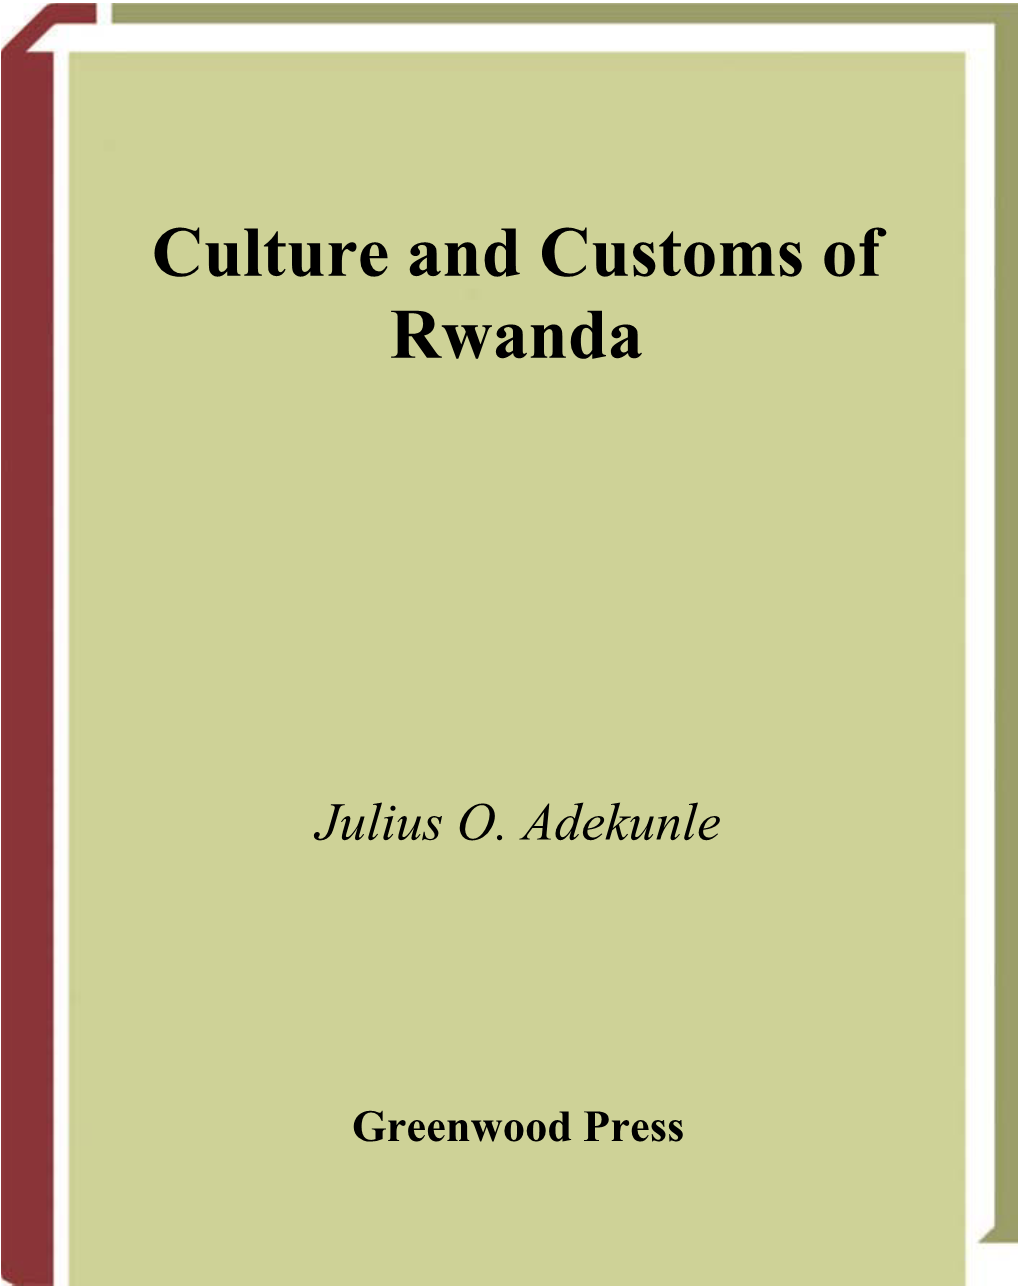 Culture and Customs of Rwanda by Adekunle, Julius O